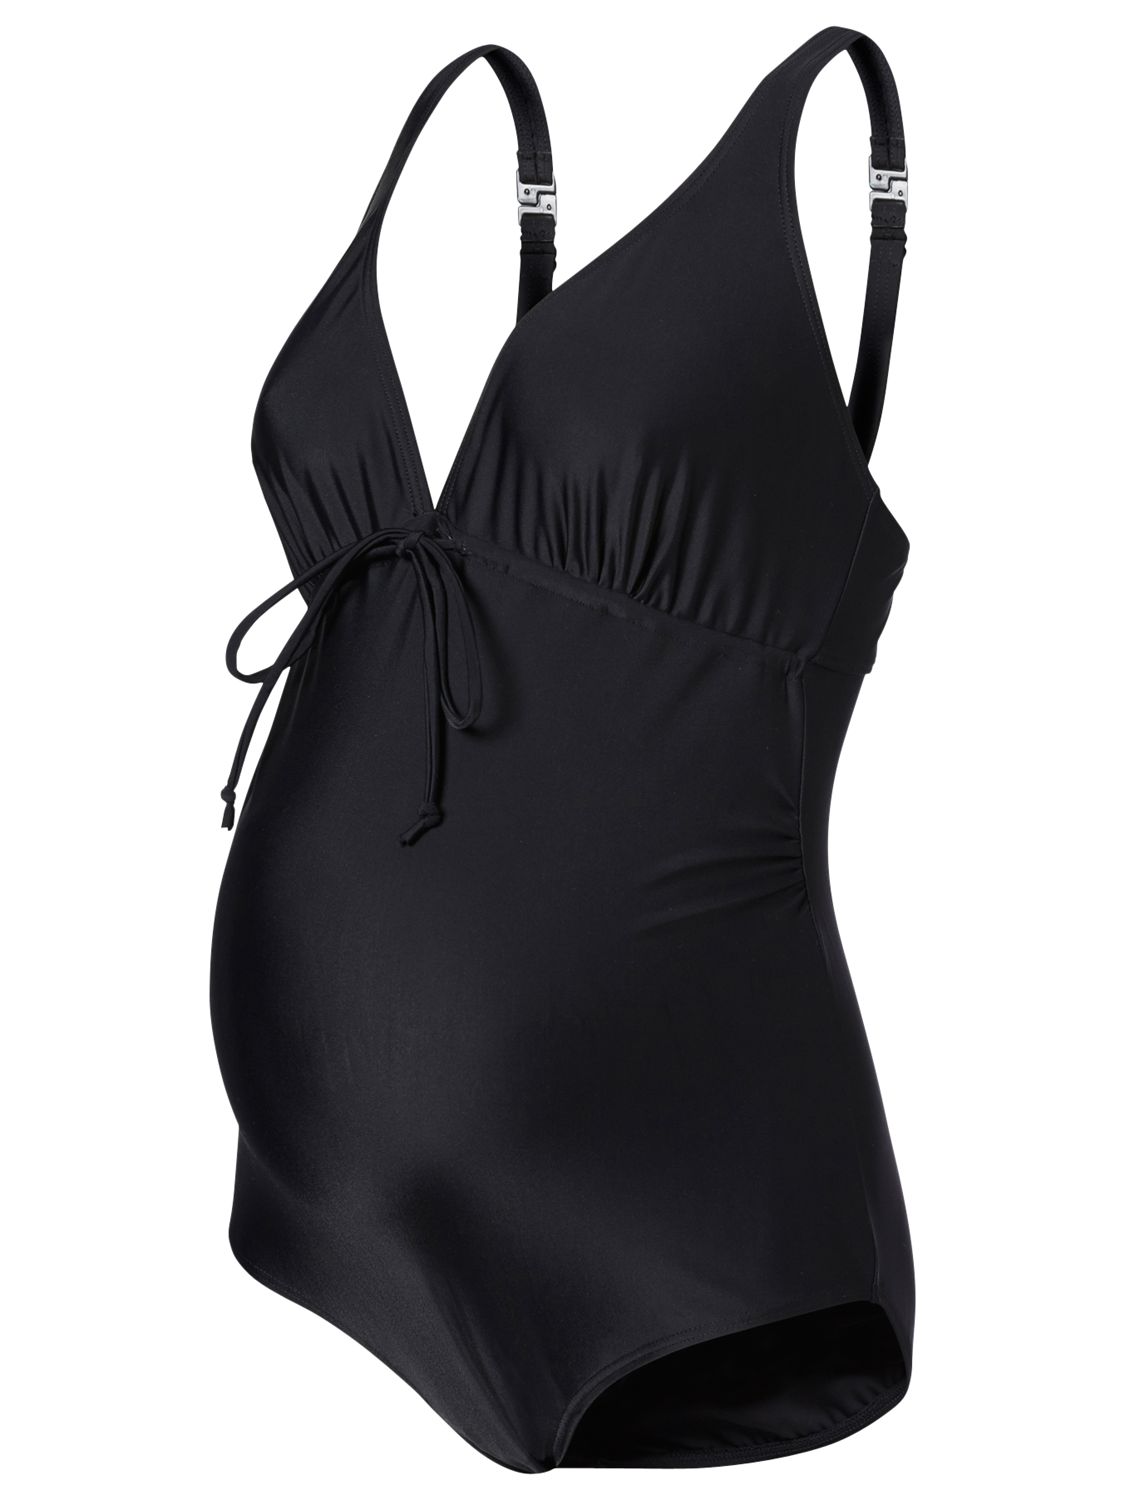 Mamalicious New Josephine Maternity Swimsuit, Black